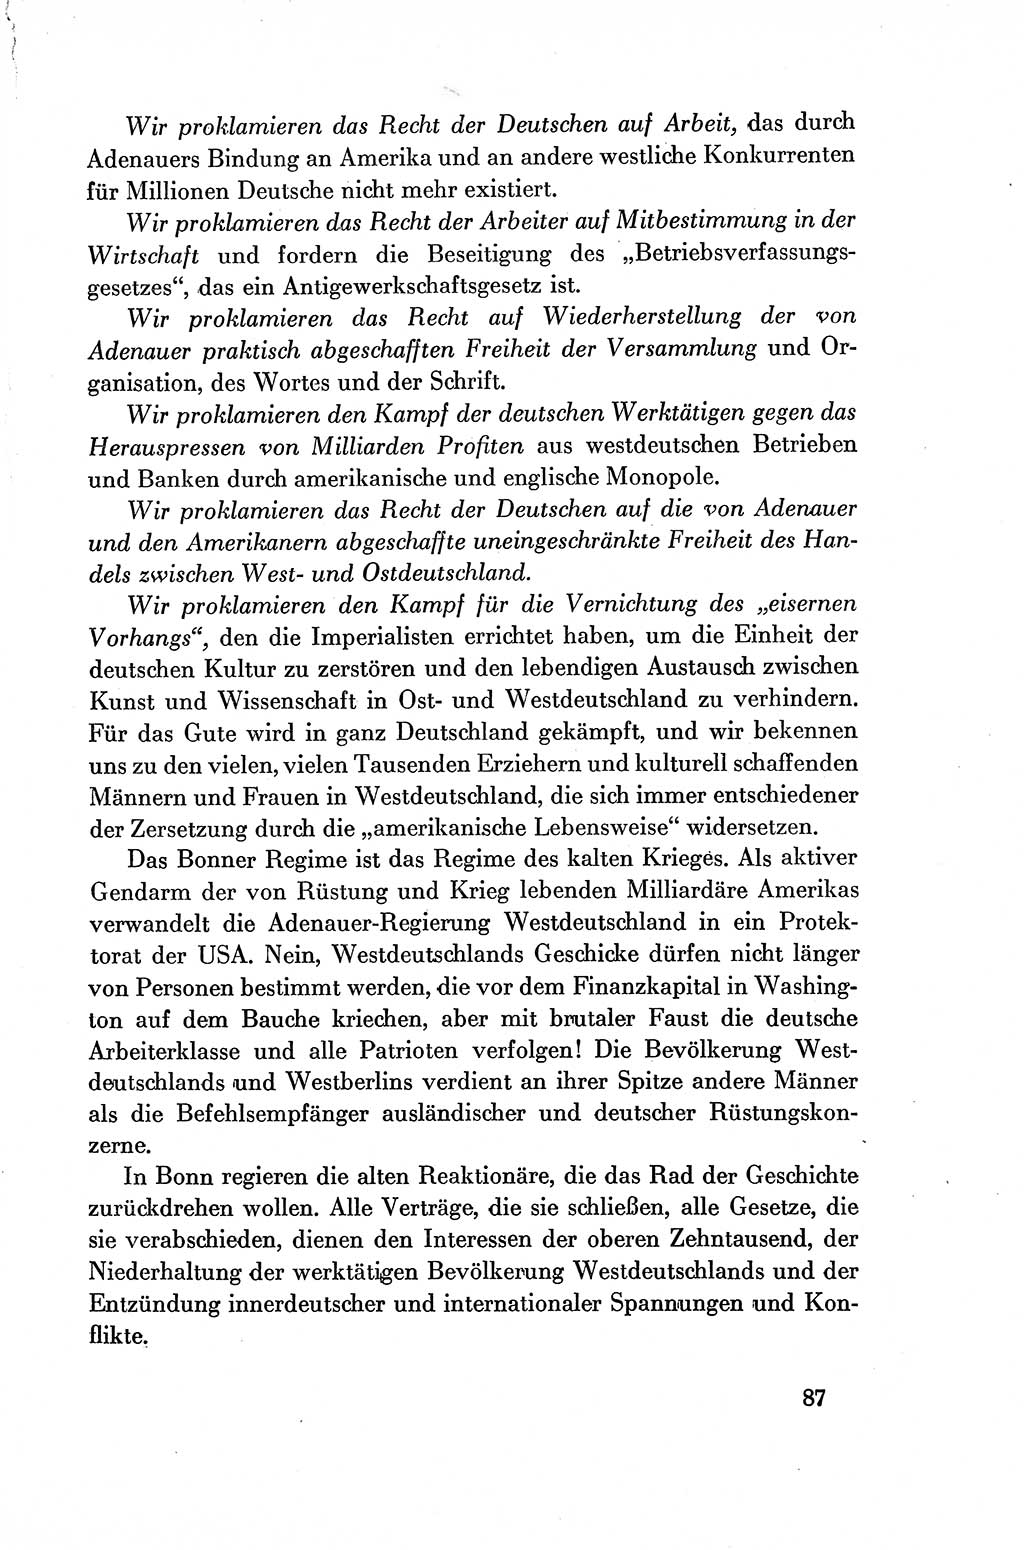 Dokumente der Sozialistischen Einheitspartei Deutschlands (SED) [Deutsche Demokratische Republik (DDR)] 1954-1955, Seite 87 (Dok. SED DDR 1954-1955, S. 87)